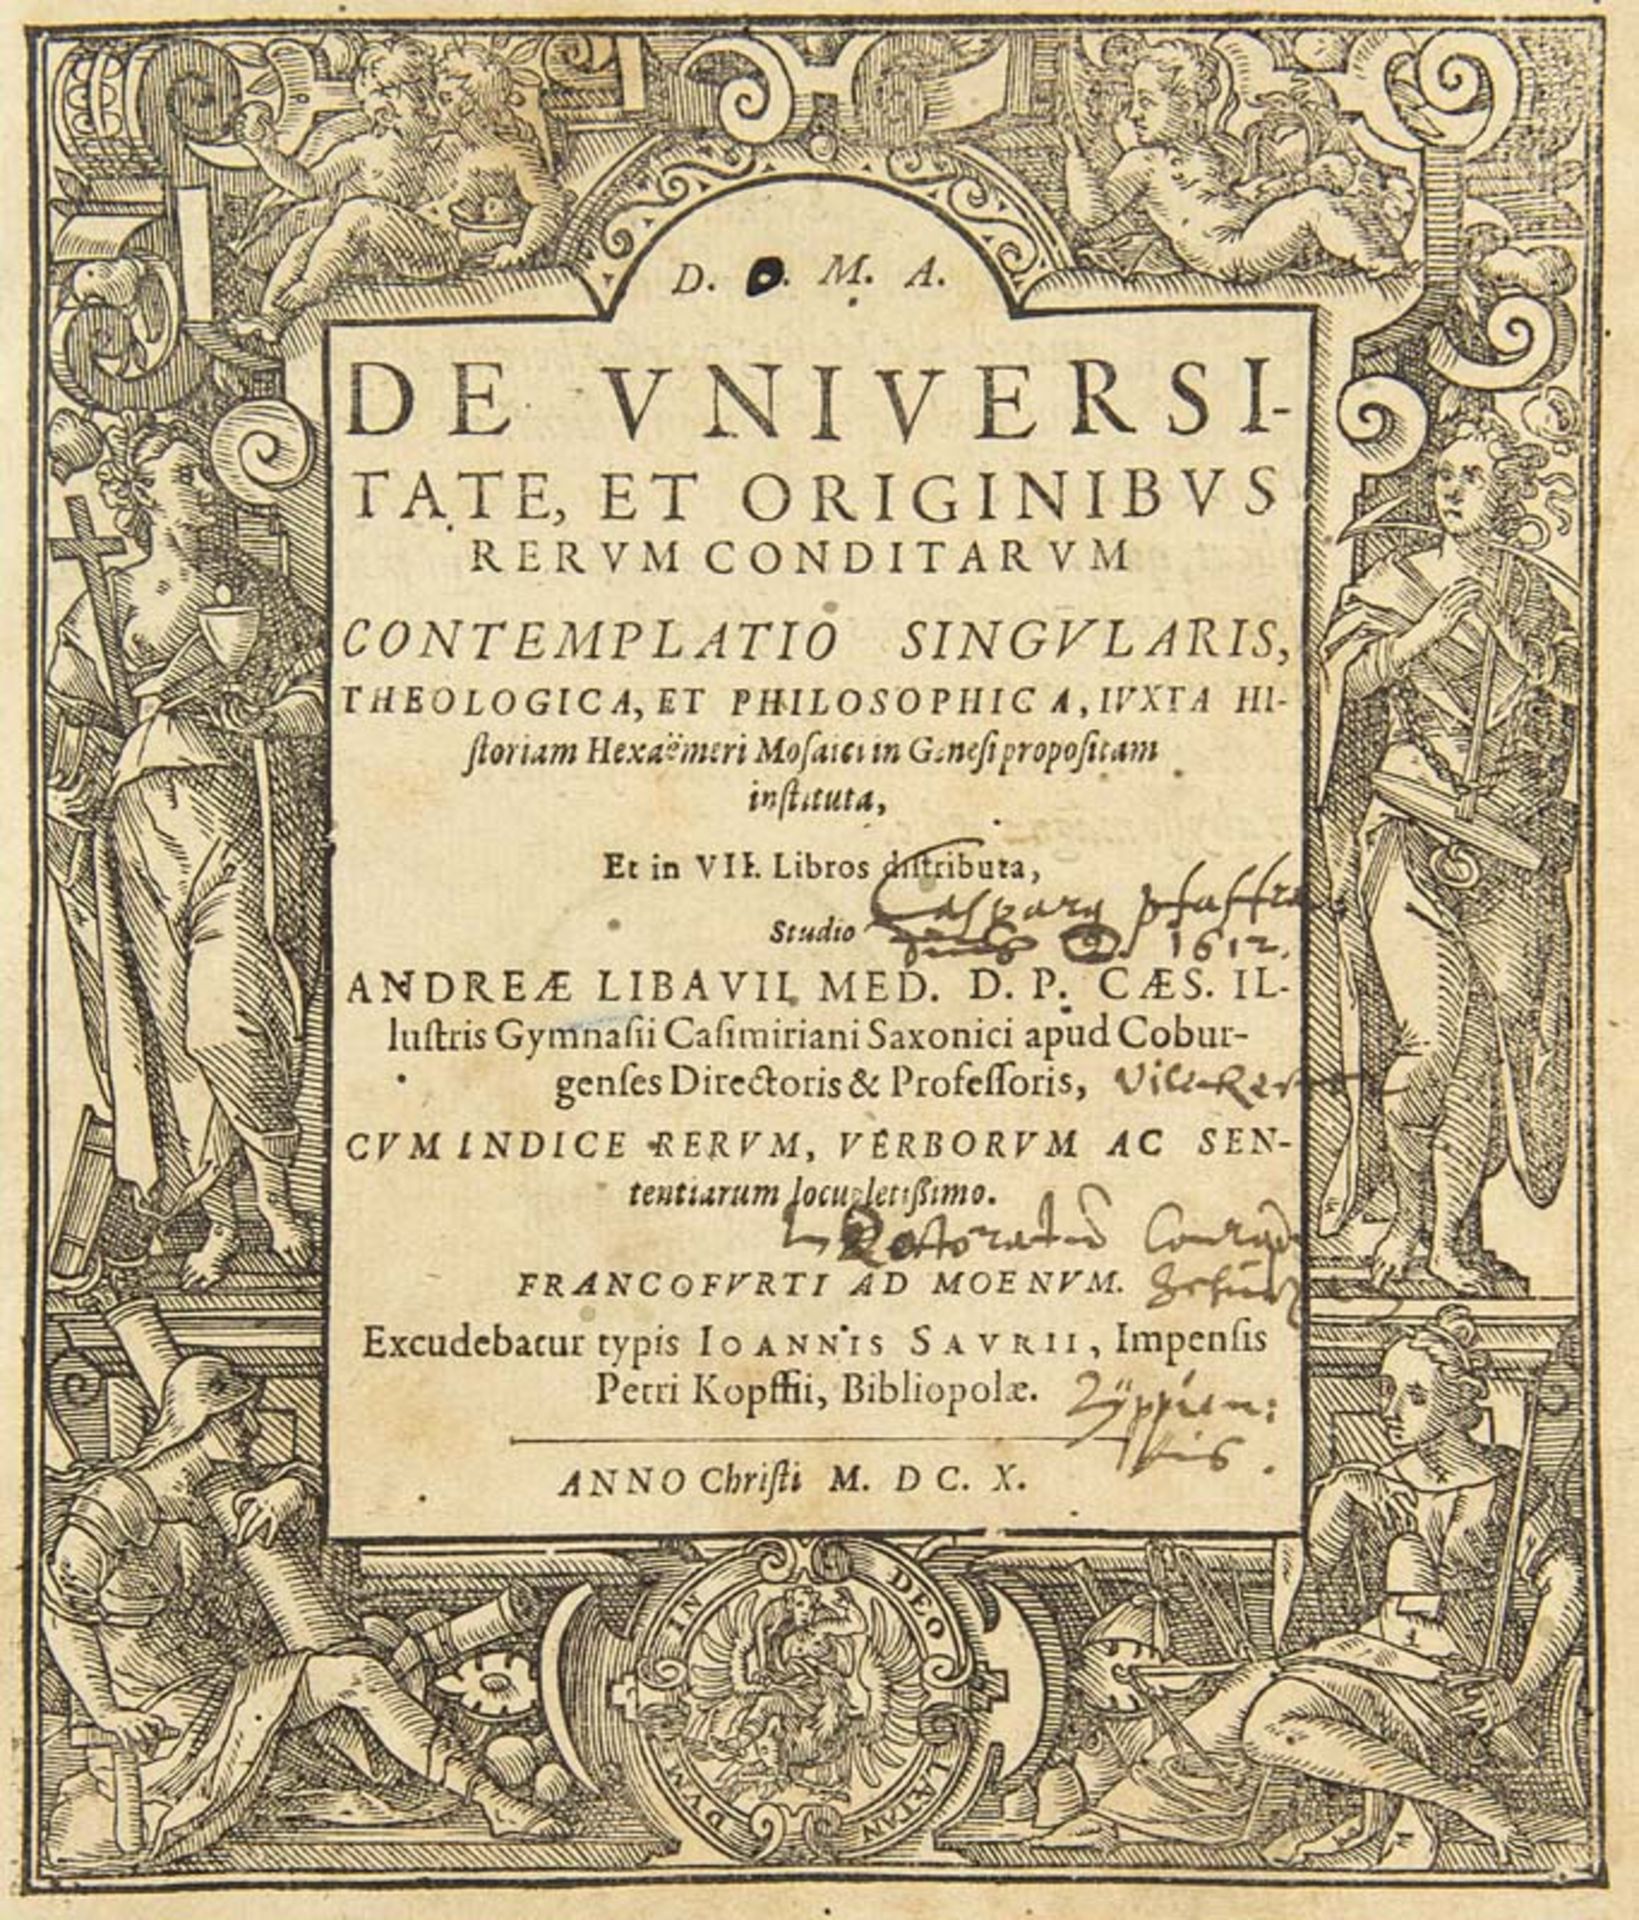 Libavius (Libau), Andreas. De universitate, et originibus rerum conditarum contemplatio